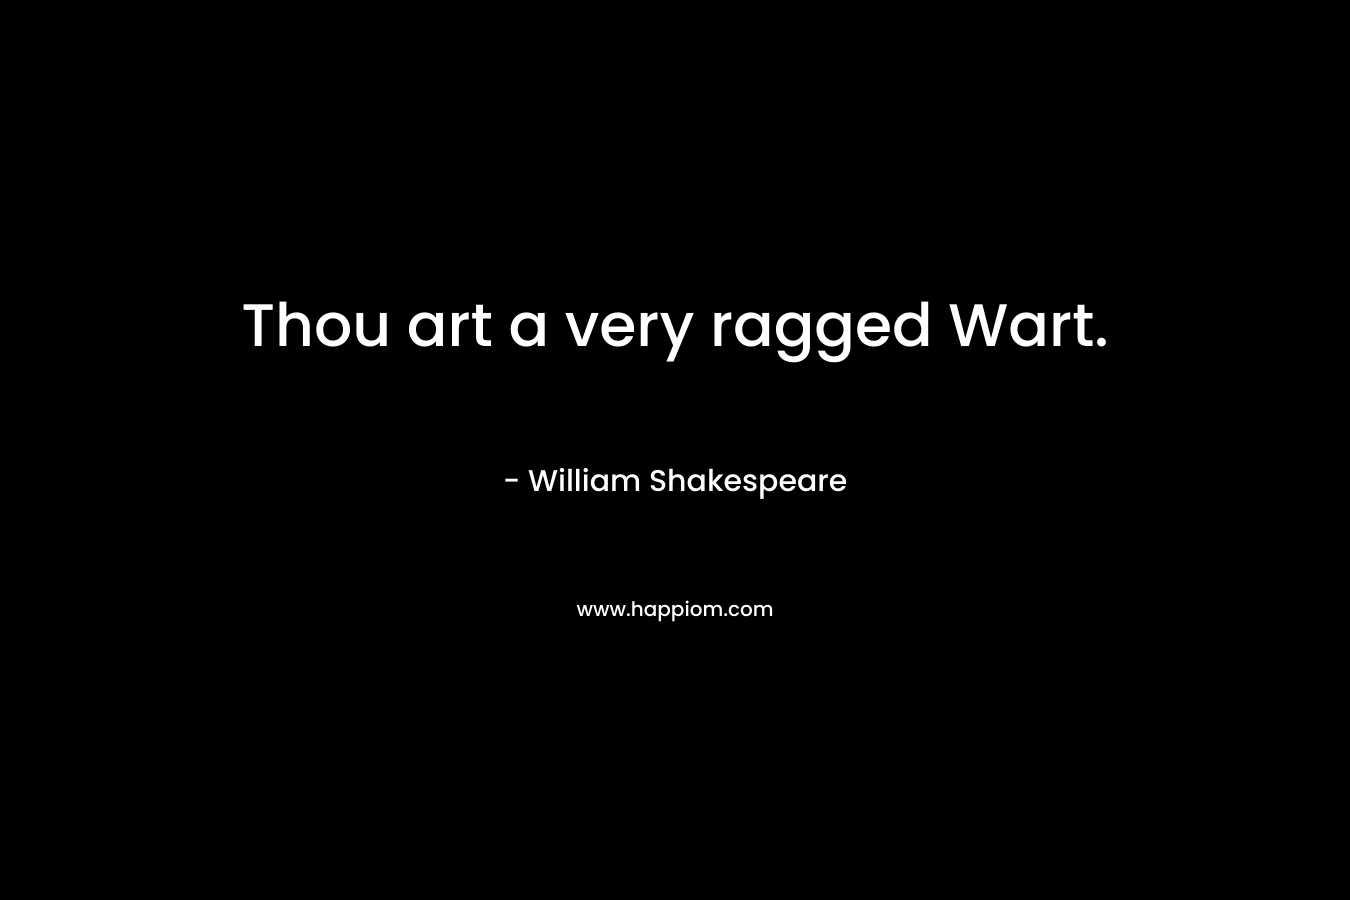 Thou art a very ragged Wart.